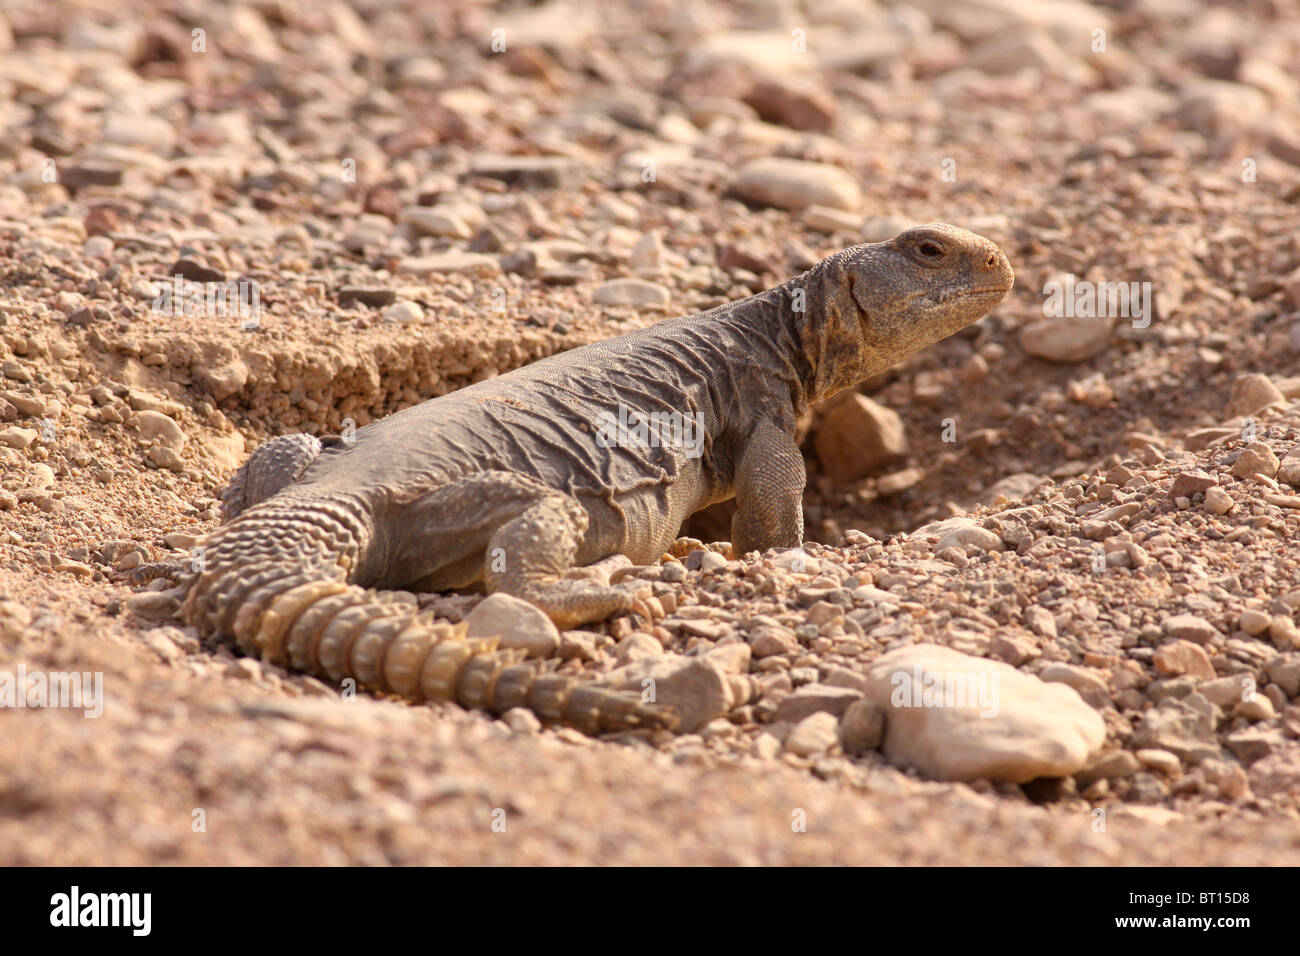 Egyptian Mastigure (Uromastyx aegyptia), AKA Leptien's Mastigure, or Egyptian dab lizard. Stock Photo